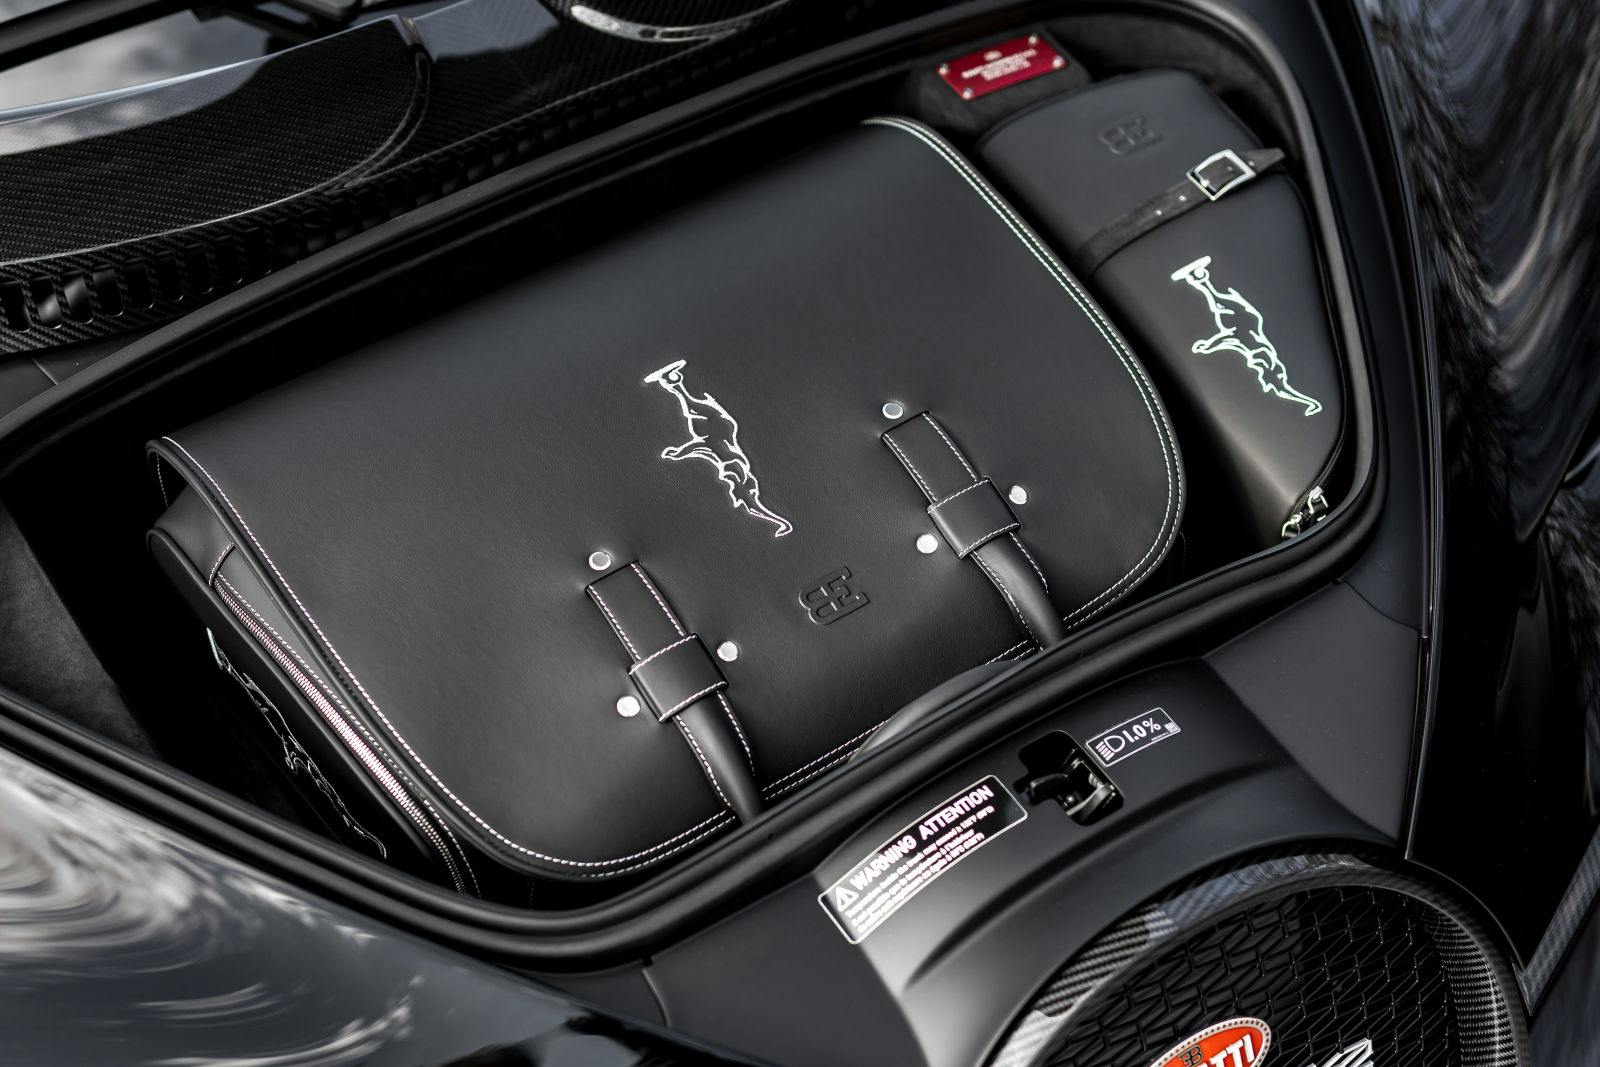 Das dreiteilige Ledertaschenset lässt sich perfekt im Bugatti Chiron verstauen – der Weekender passt optimal in den vorderen Kofferraum.